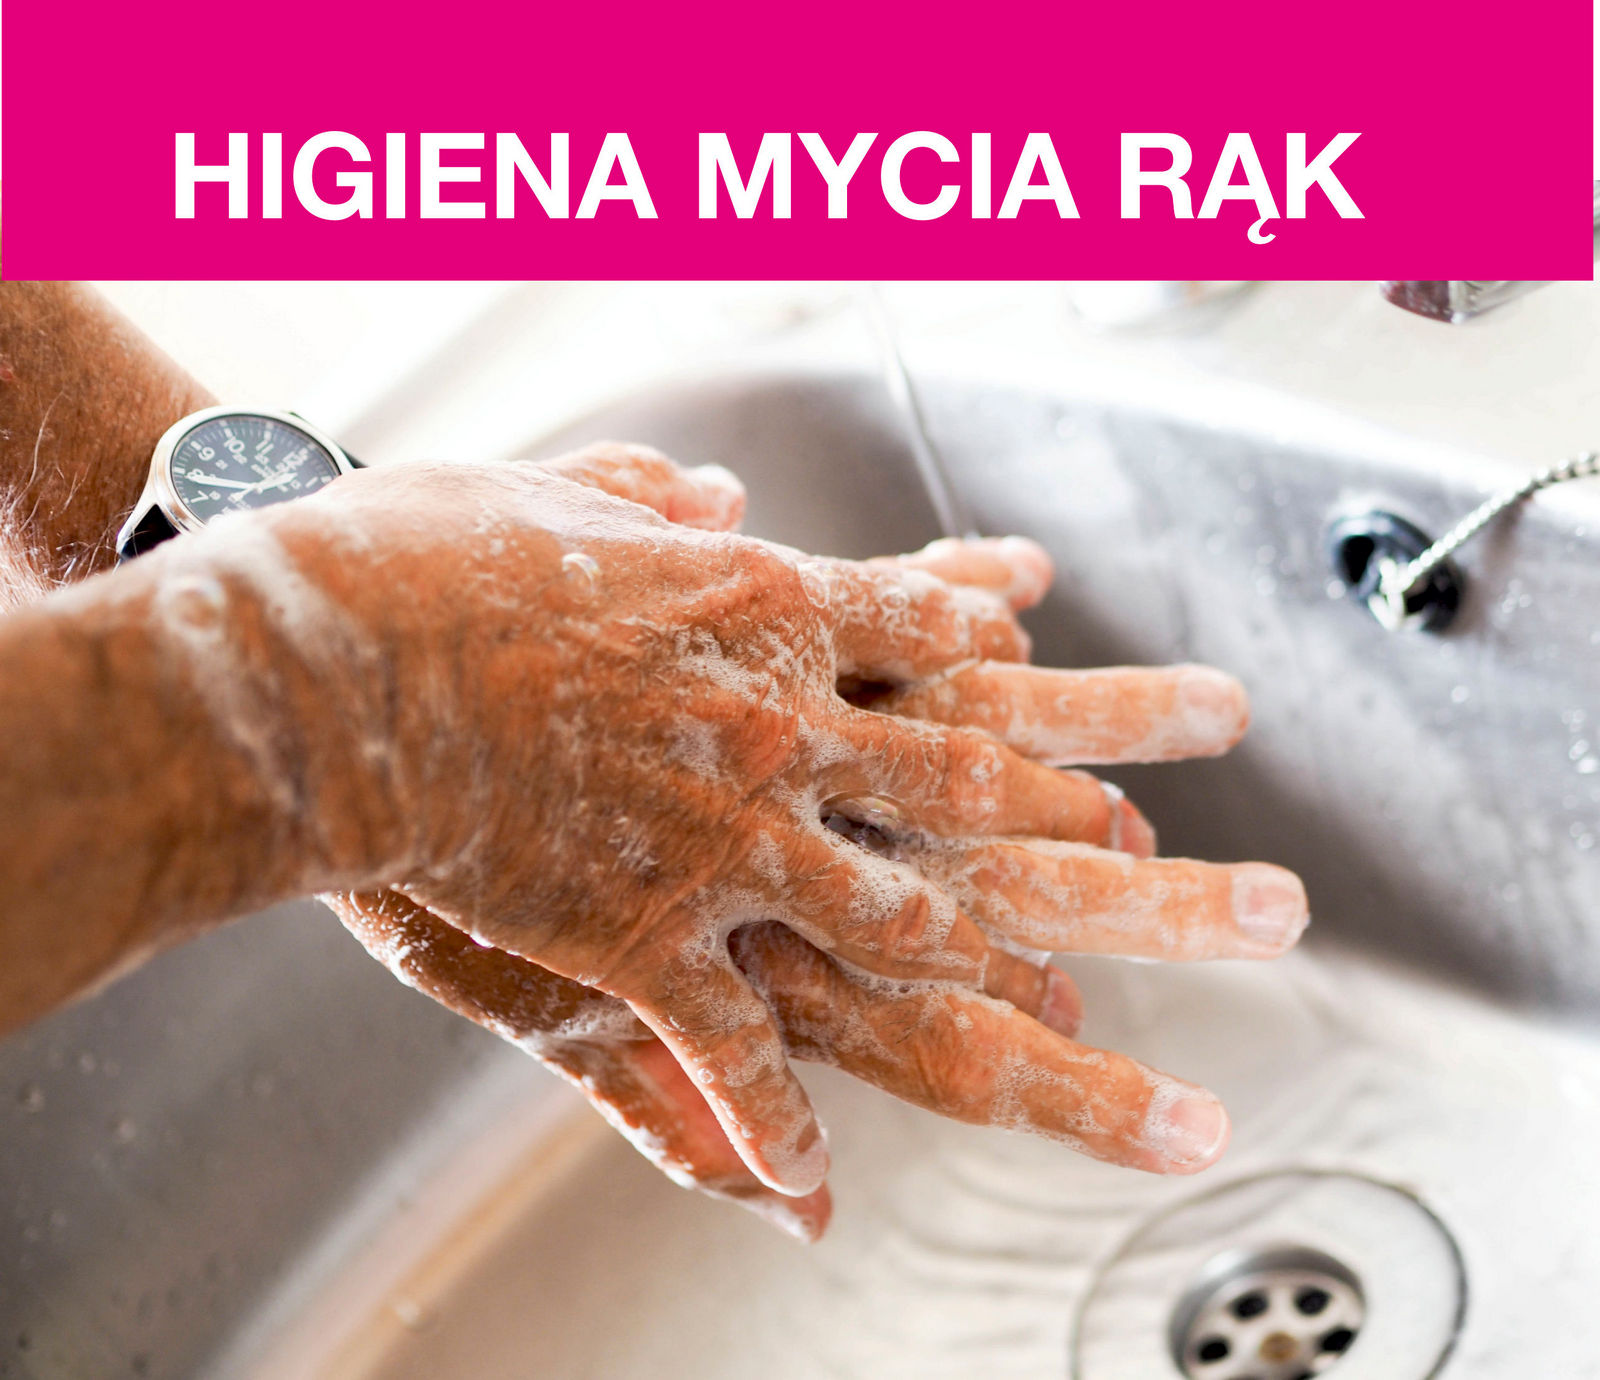 Higiena mycia rąk